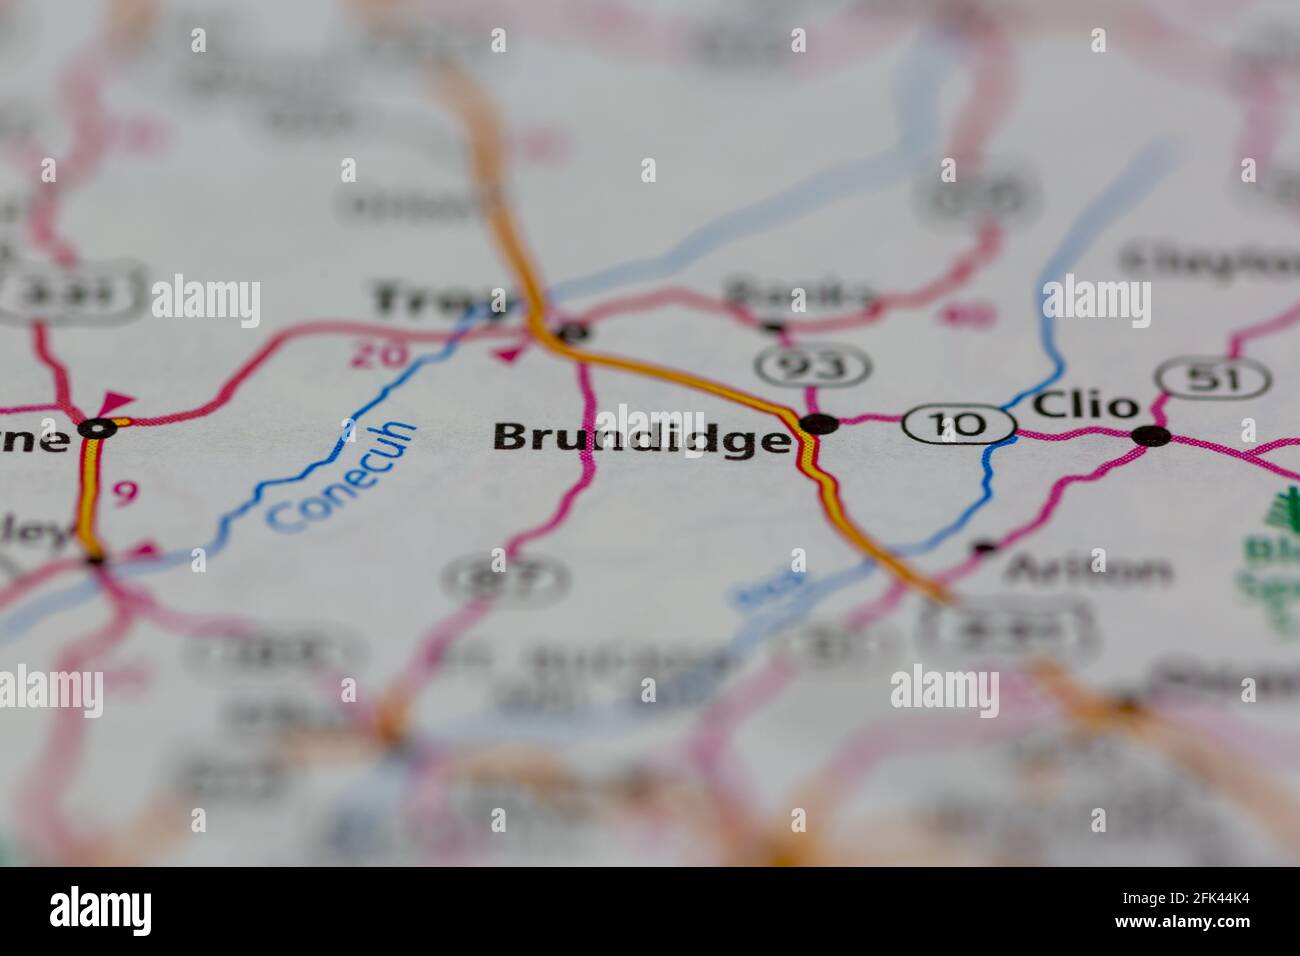 Brundidge Alabama USA montré sur une carte de géographie ou une route carte Banque D'Images